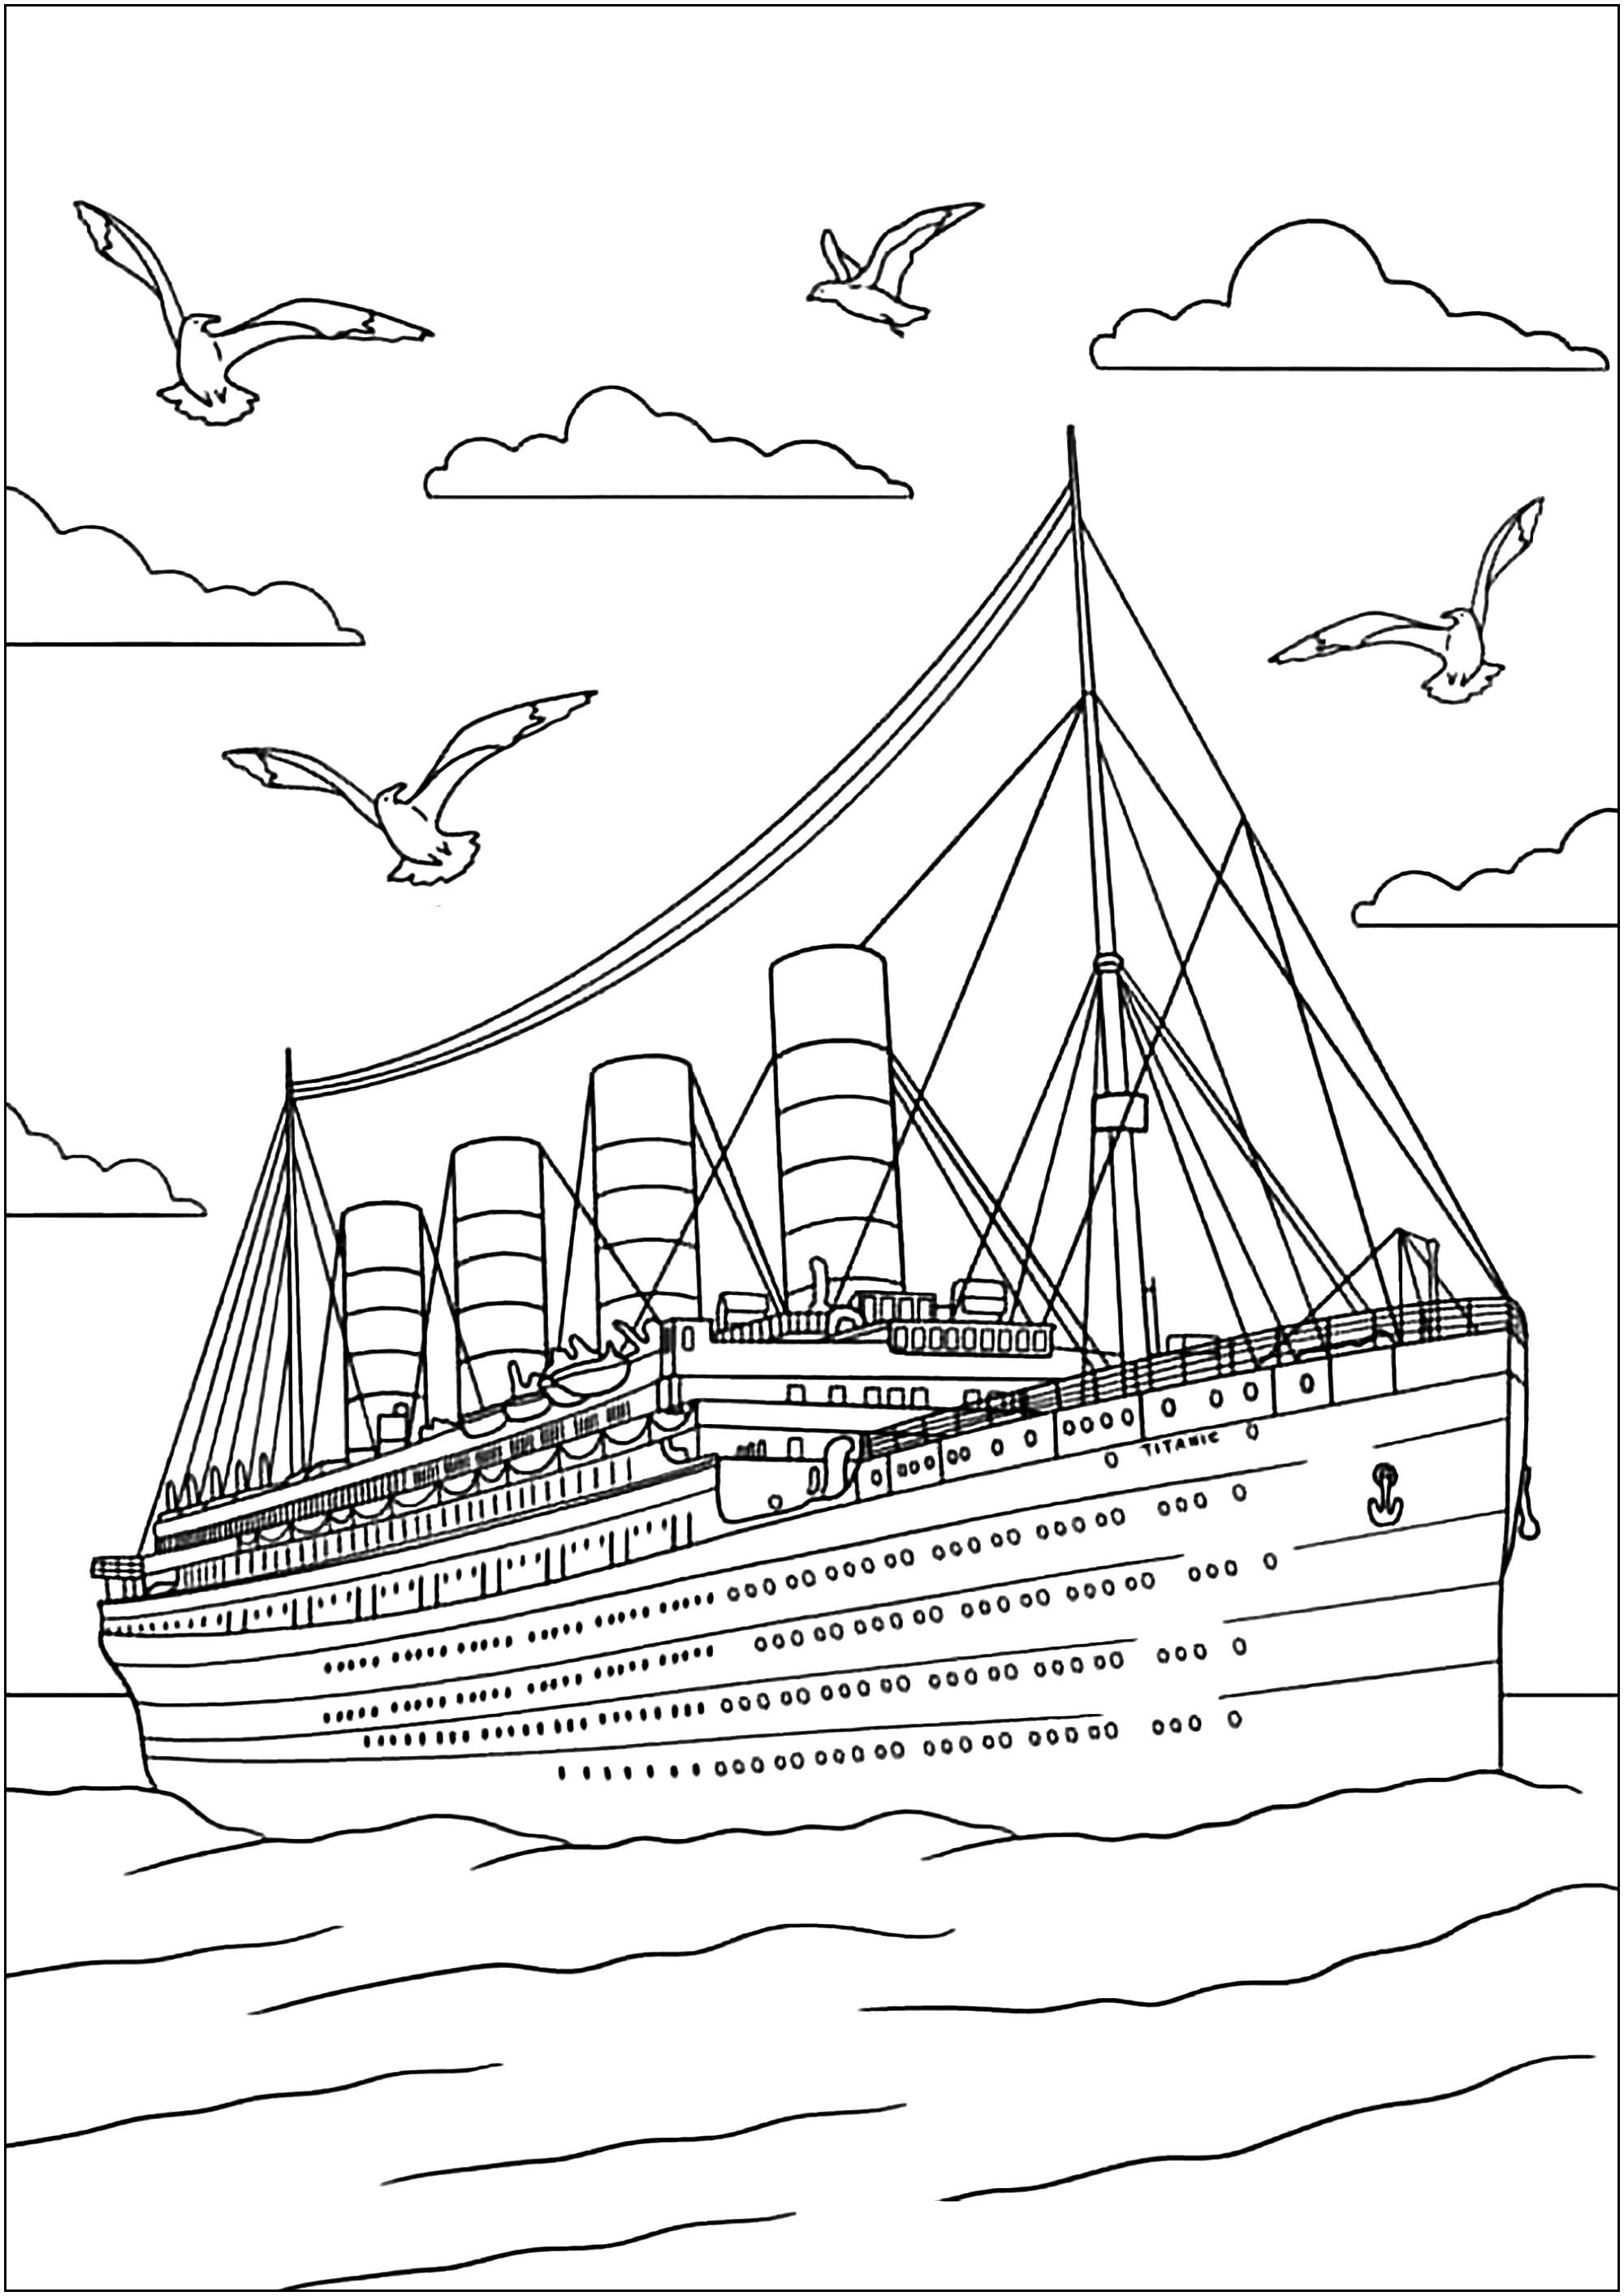 Magnífico desenho do Titanic, muito pormenorizado